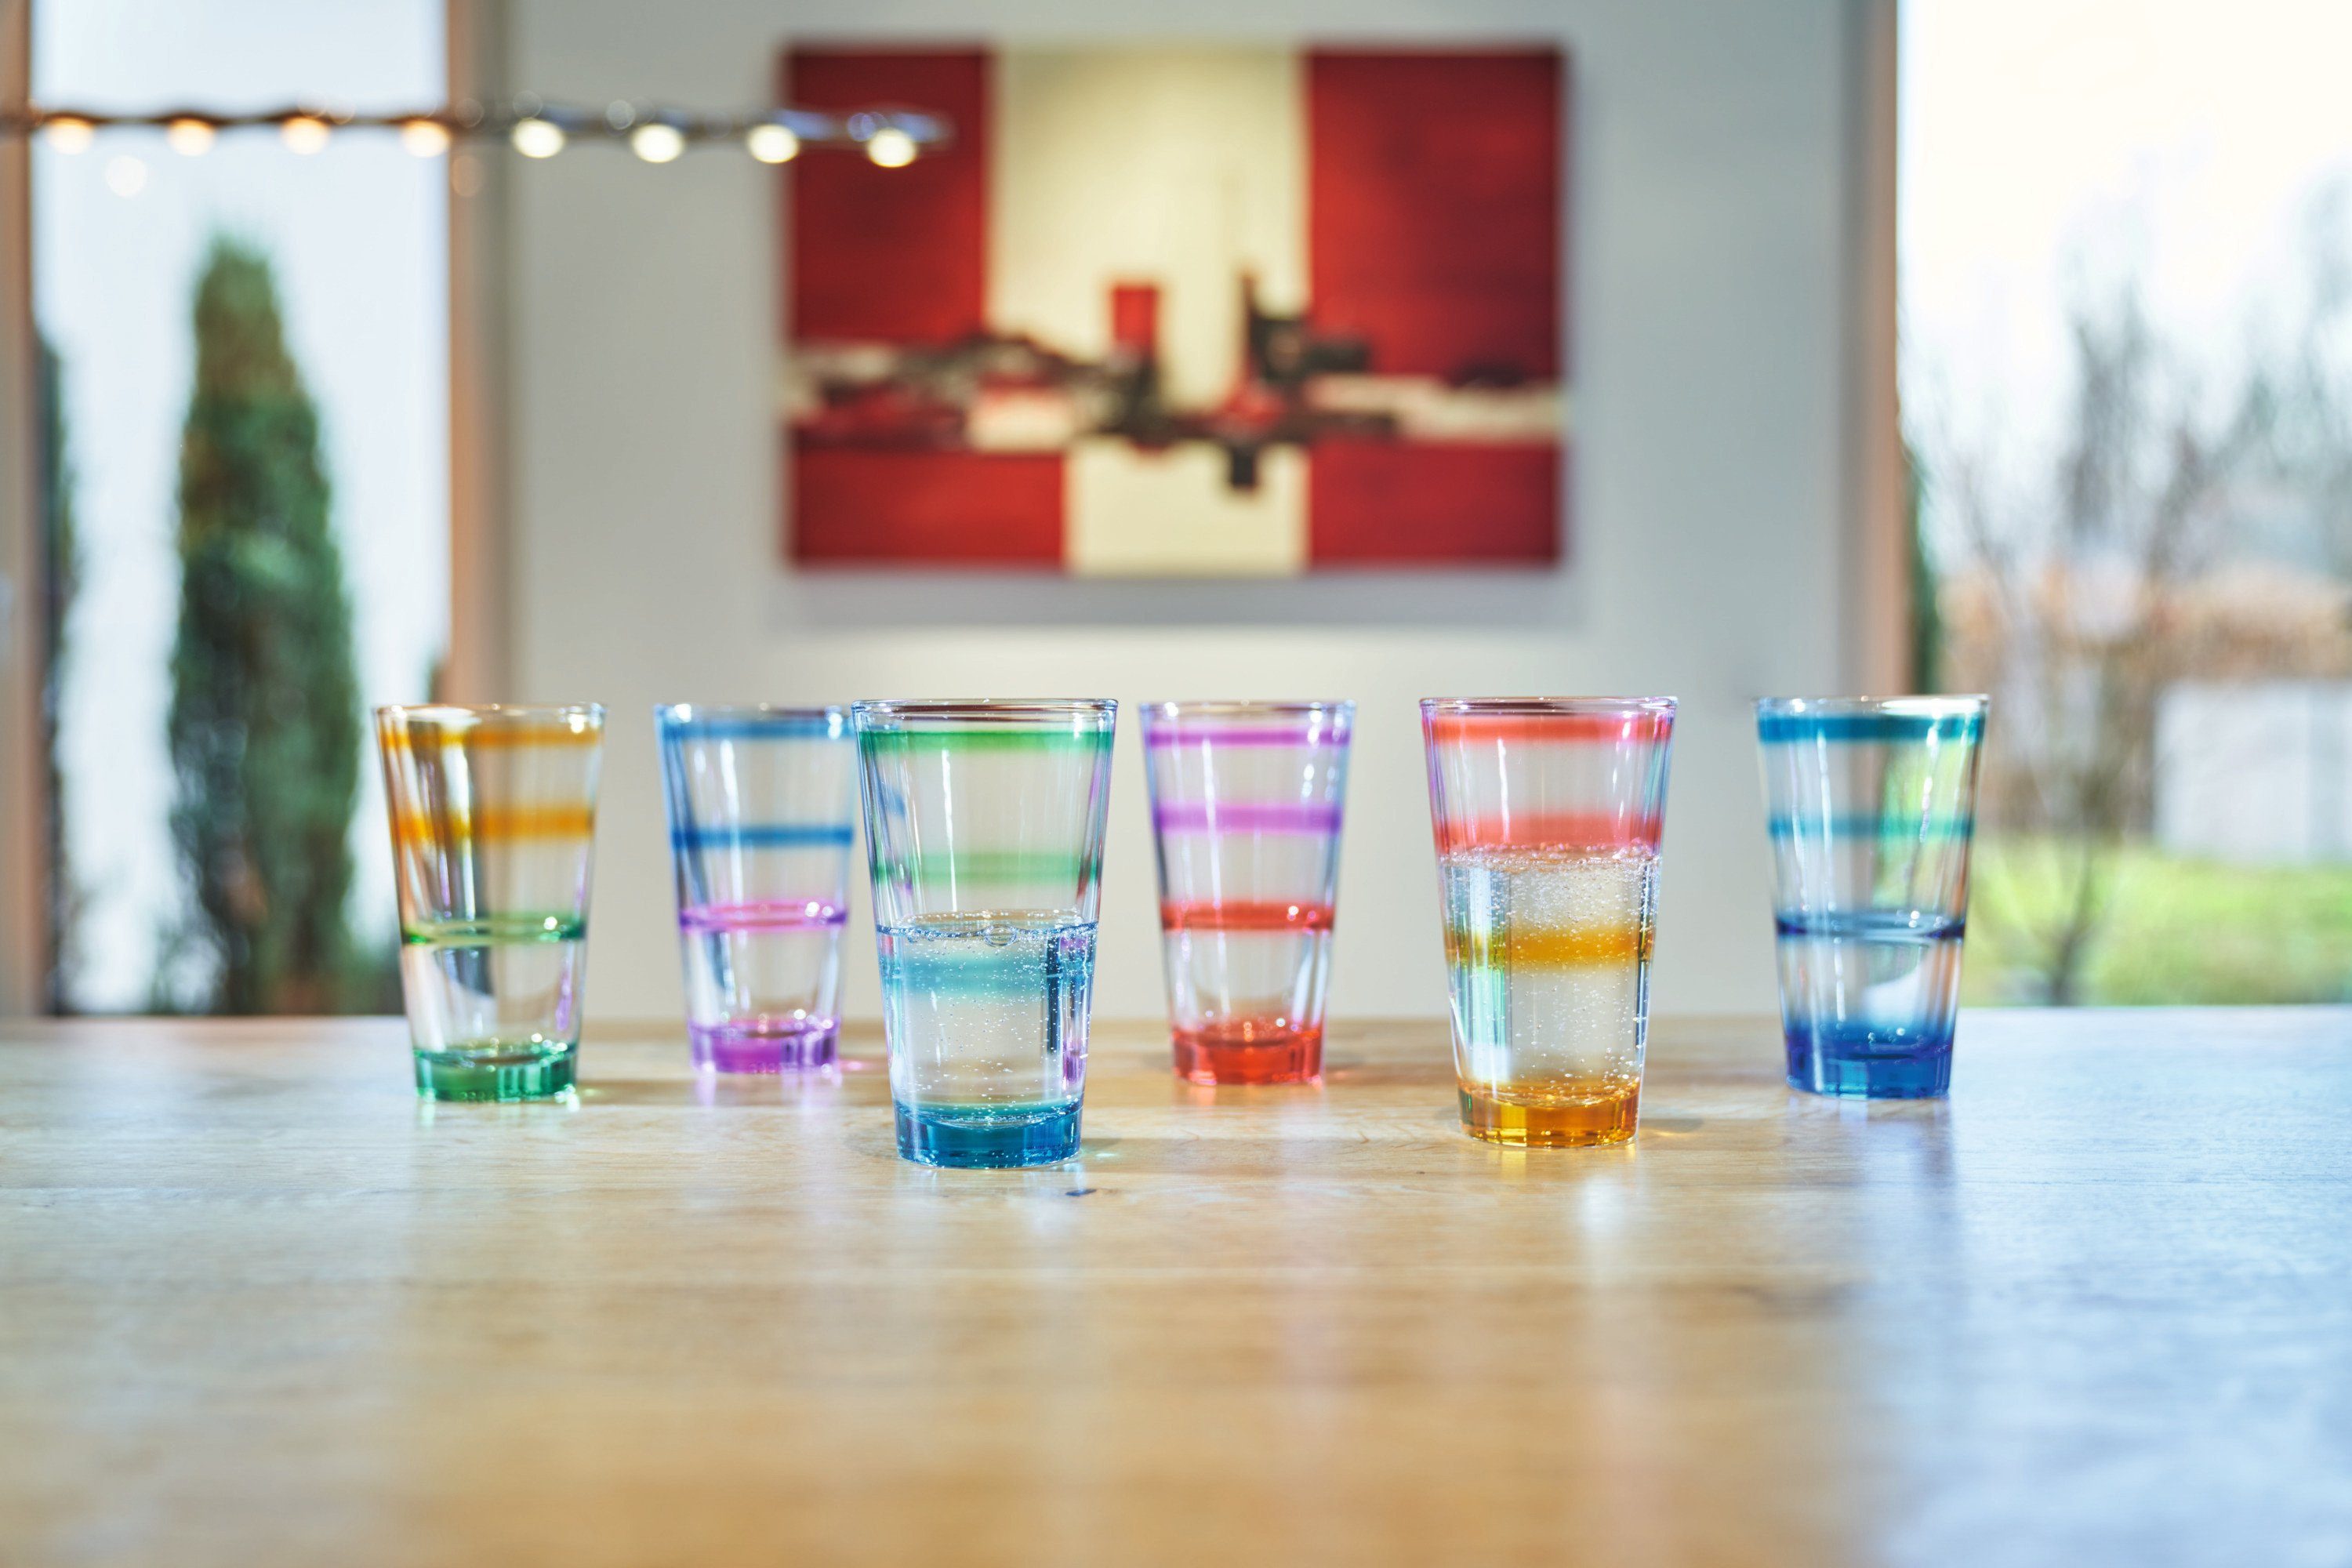 Buntglas, Glas aus Glas ml., grün, Glas der 330 LEONARDO Füllmenge LEONARDO Serie Rainbow,